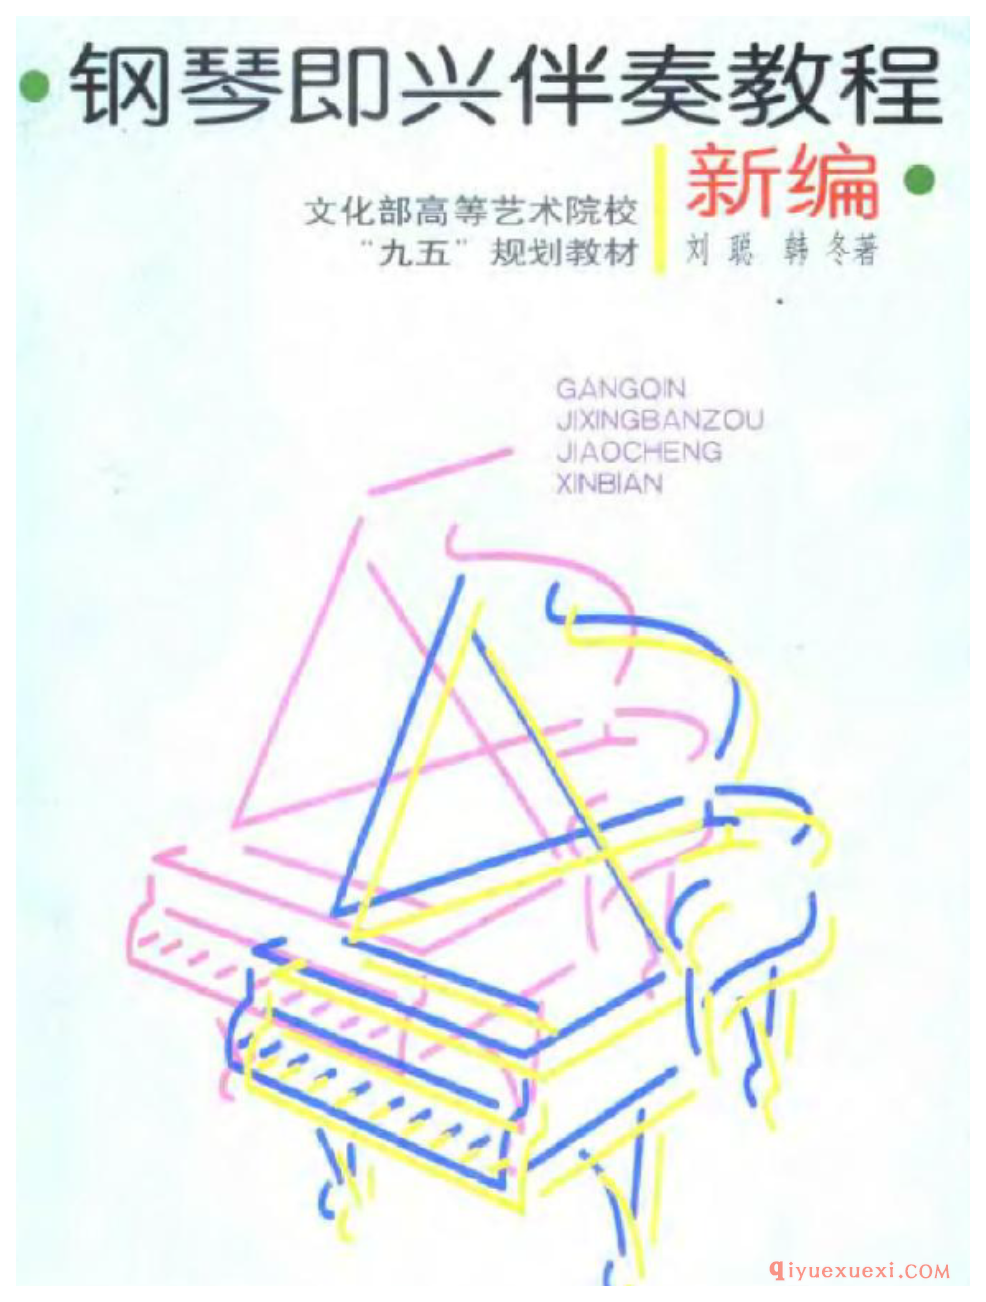 刘聪《钢琴即兴伴奏教程》教学视频+教材配套书电子版合集